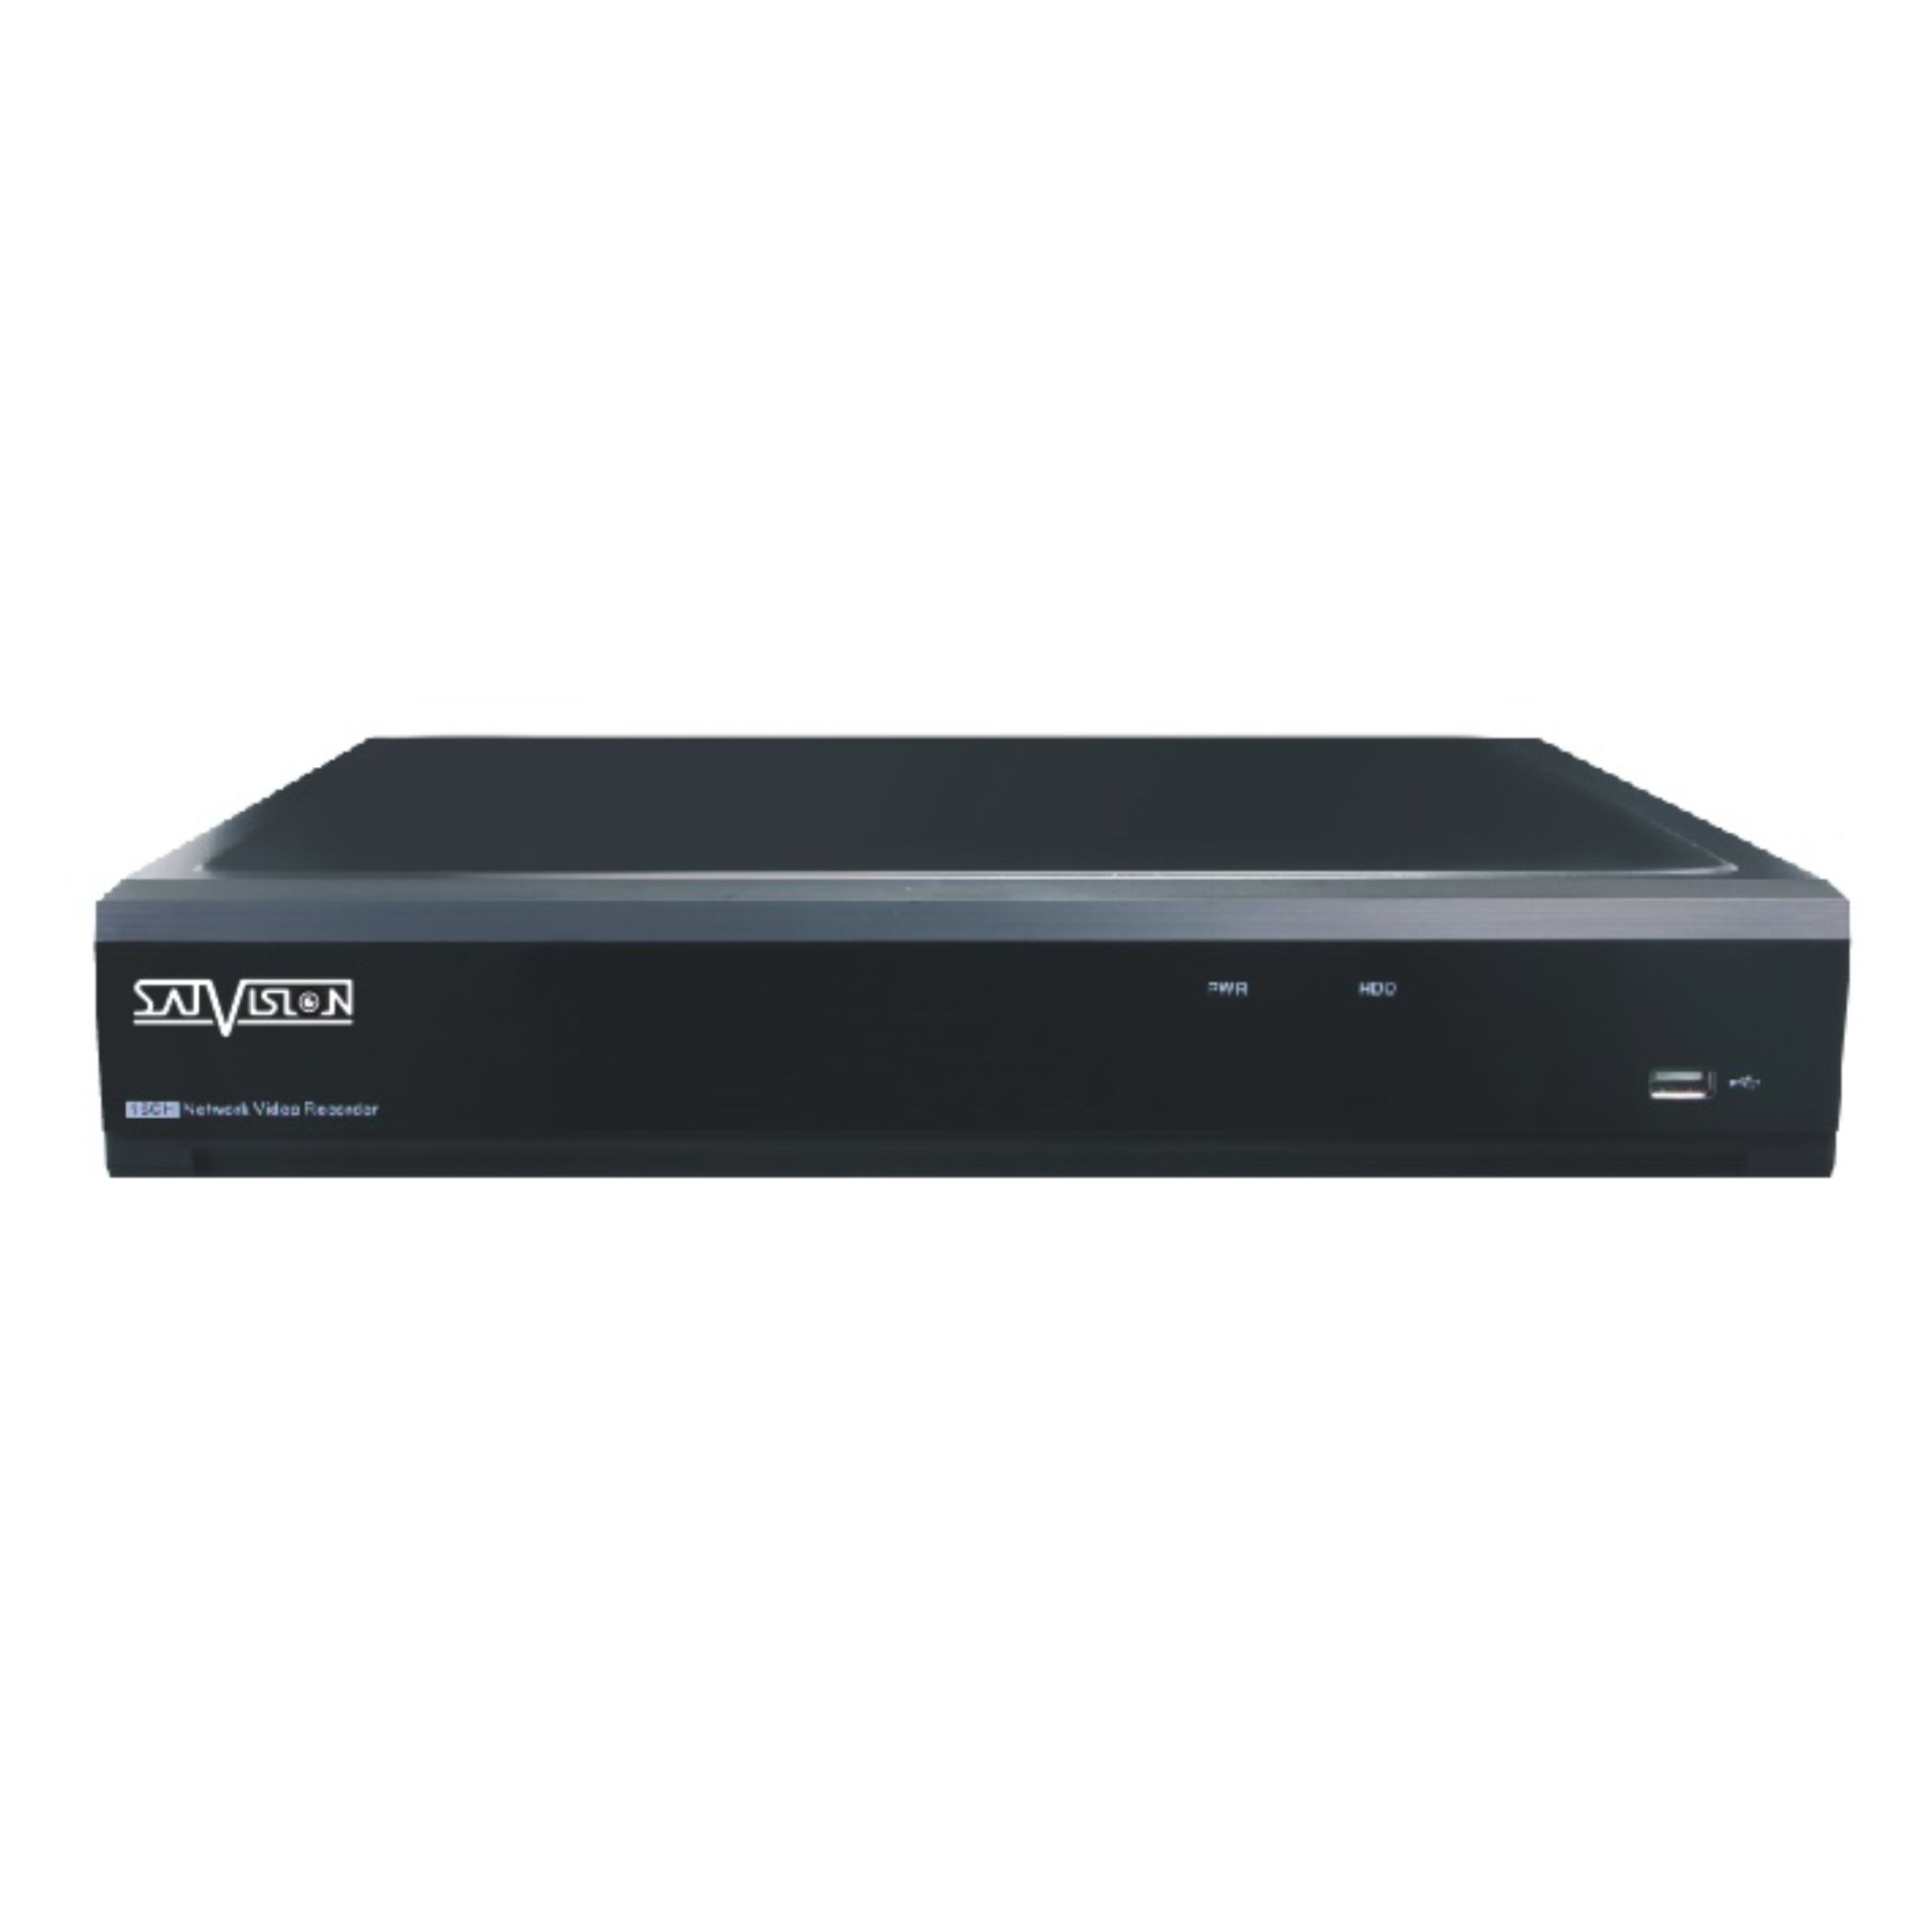 Система видеонаблюдения Satvision SVR-4115P